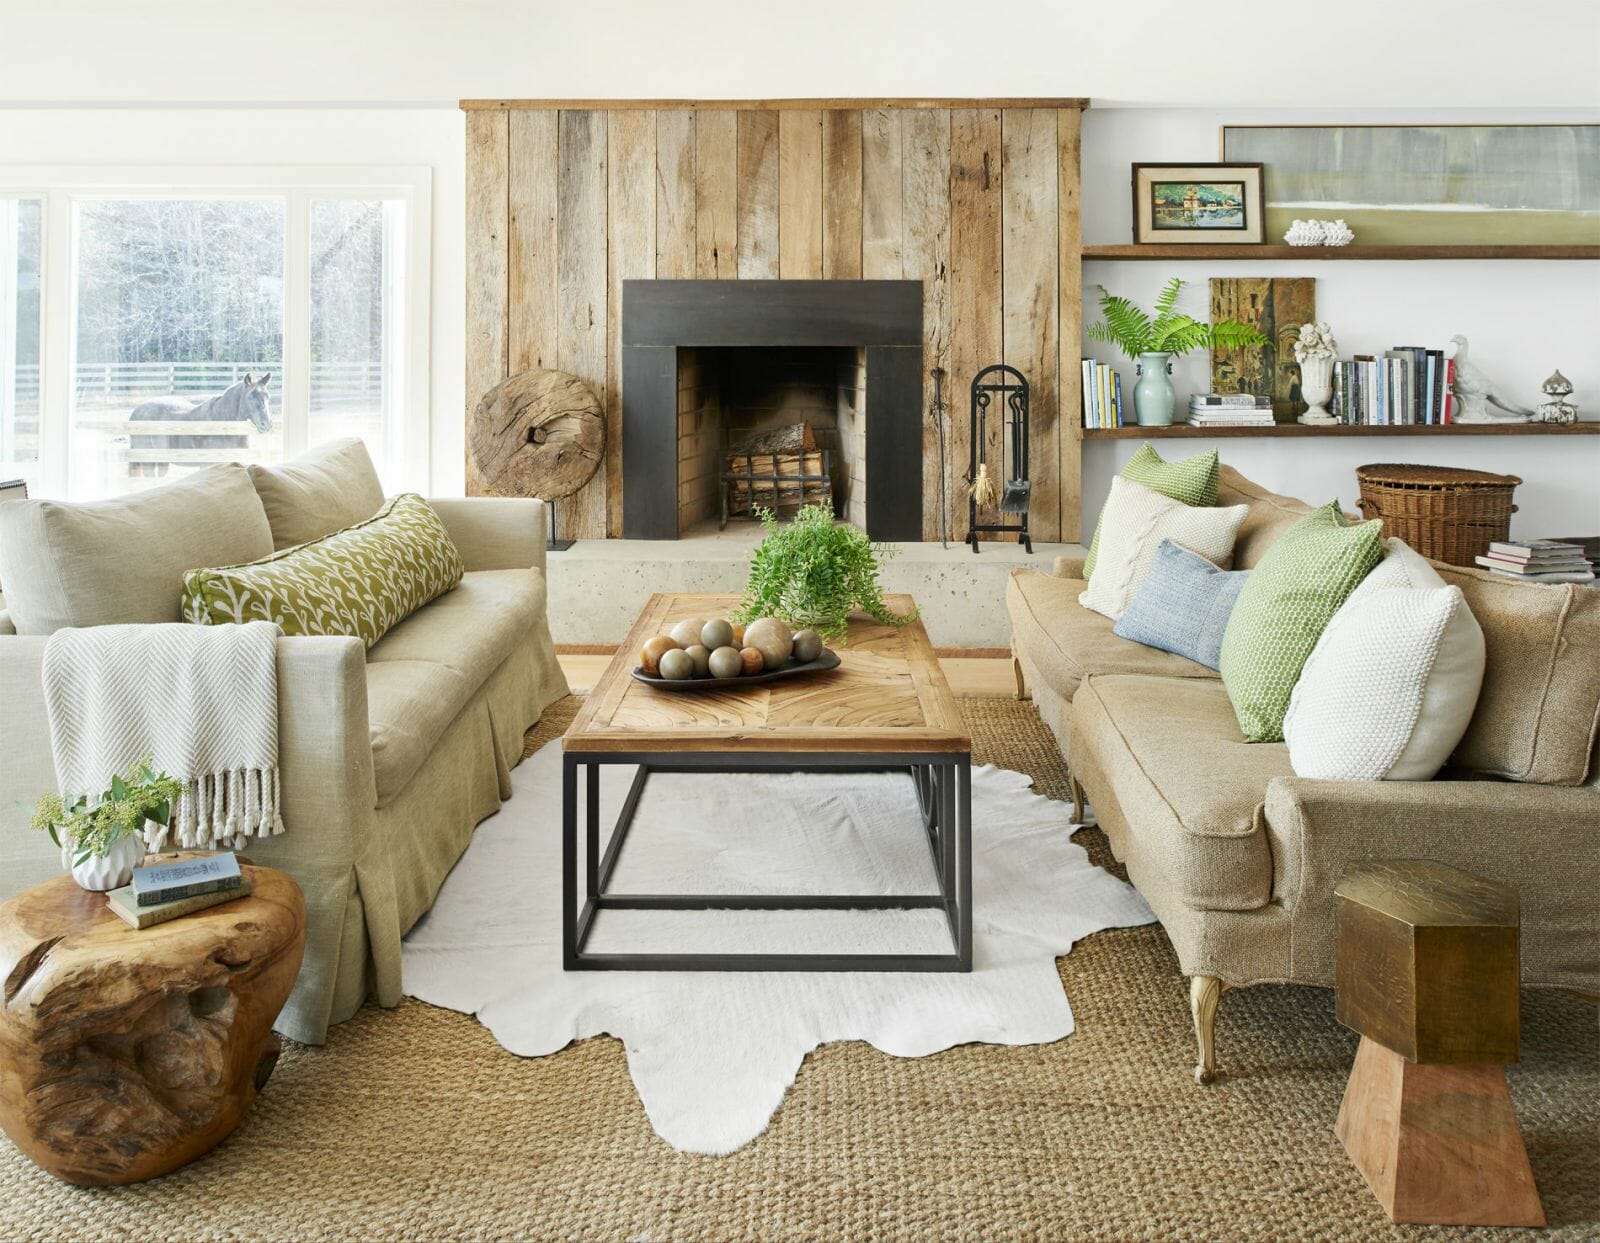 9 Natural Decor Ideas for an Outdoor-Inspired Home - Decorilla Online  Interior Design